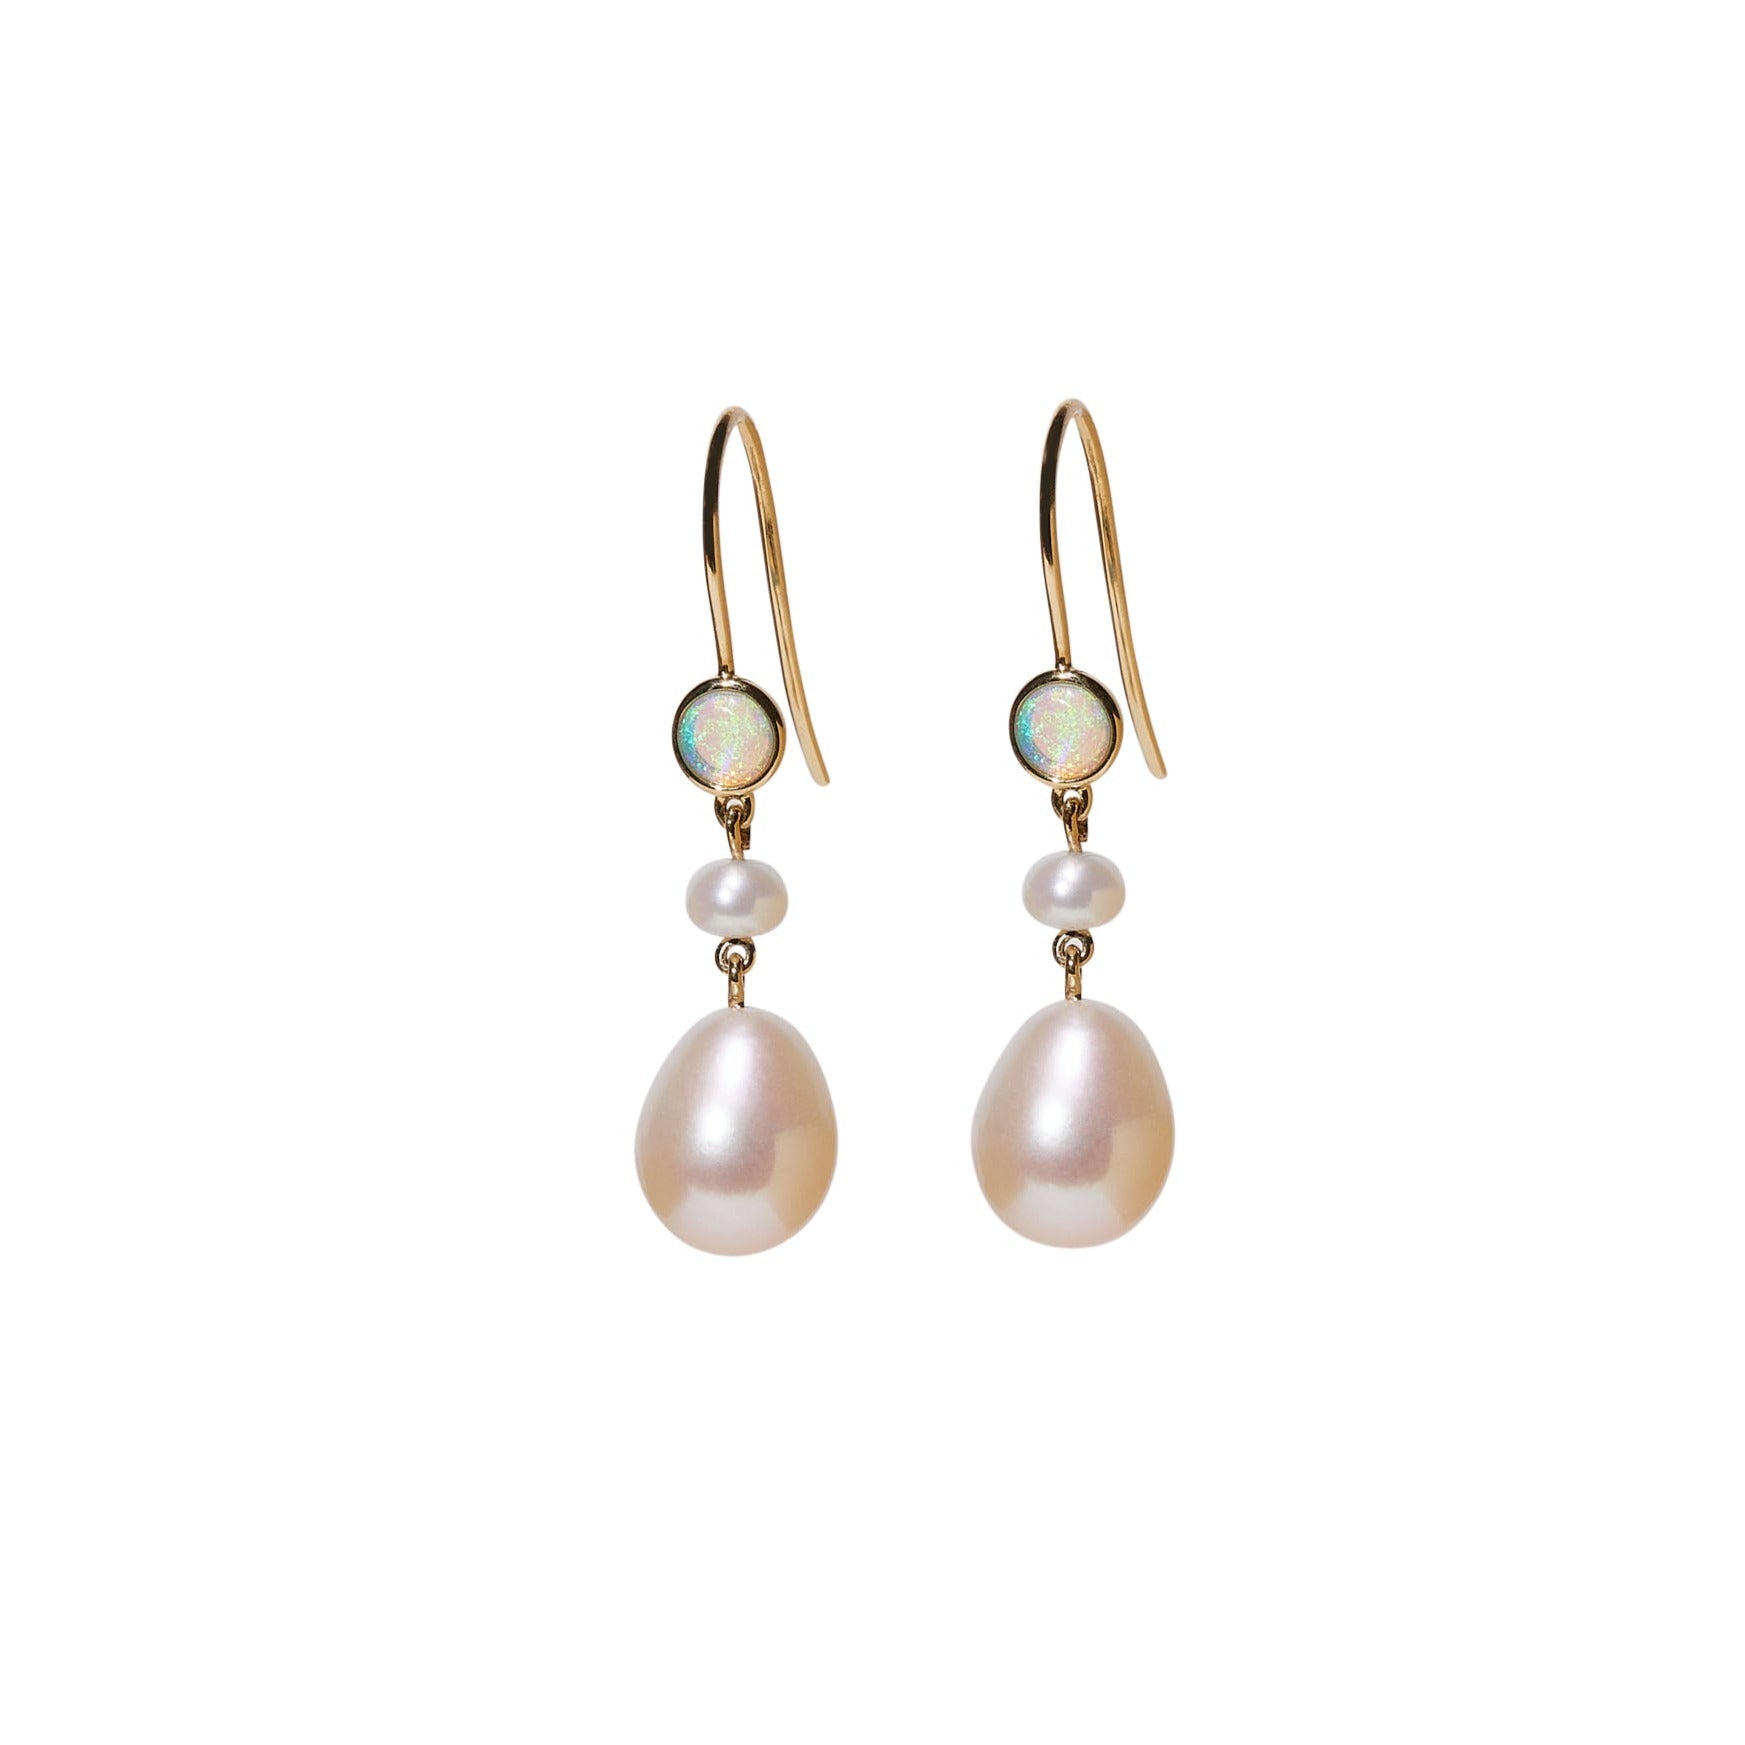 Venus pearl and opal earrings